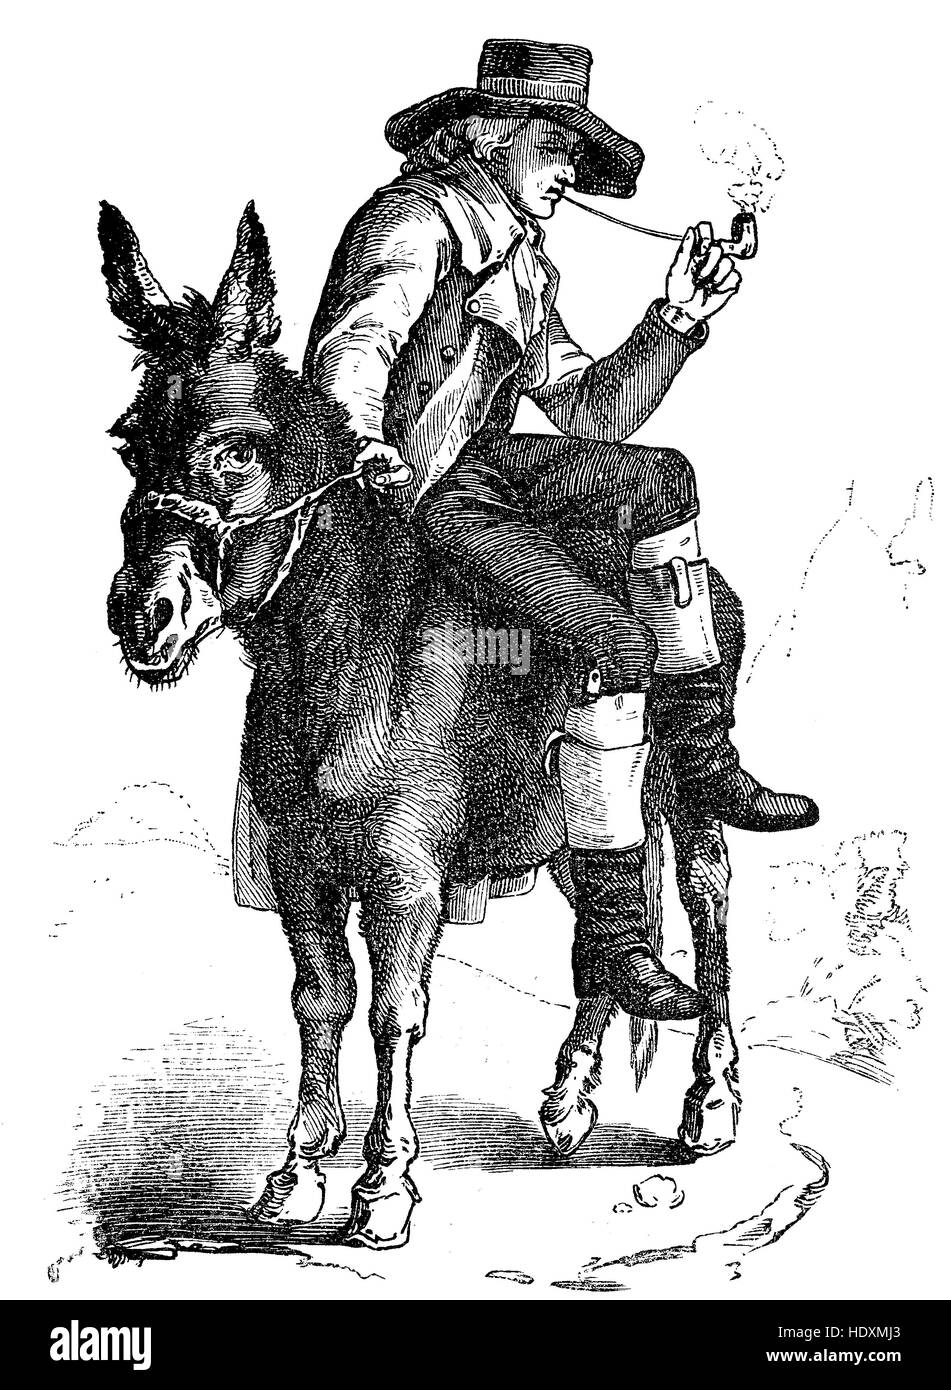 Johann Christoph Friedrich von Schiller, 1759-1805, deutscher Dichter, Philosoph, Arzt, Historiker und Dramatiker, er sitzt auf einem Esel und raucht Pfeife, Holzschnitt aus dem Jahr 1882, digital verbessert Stockfoto